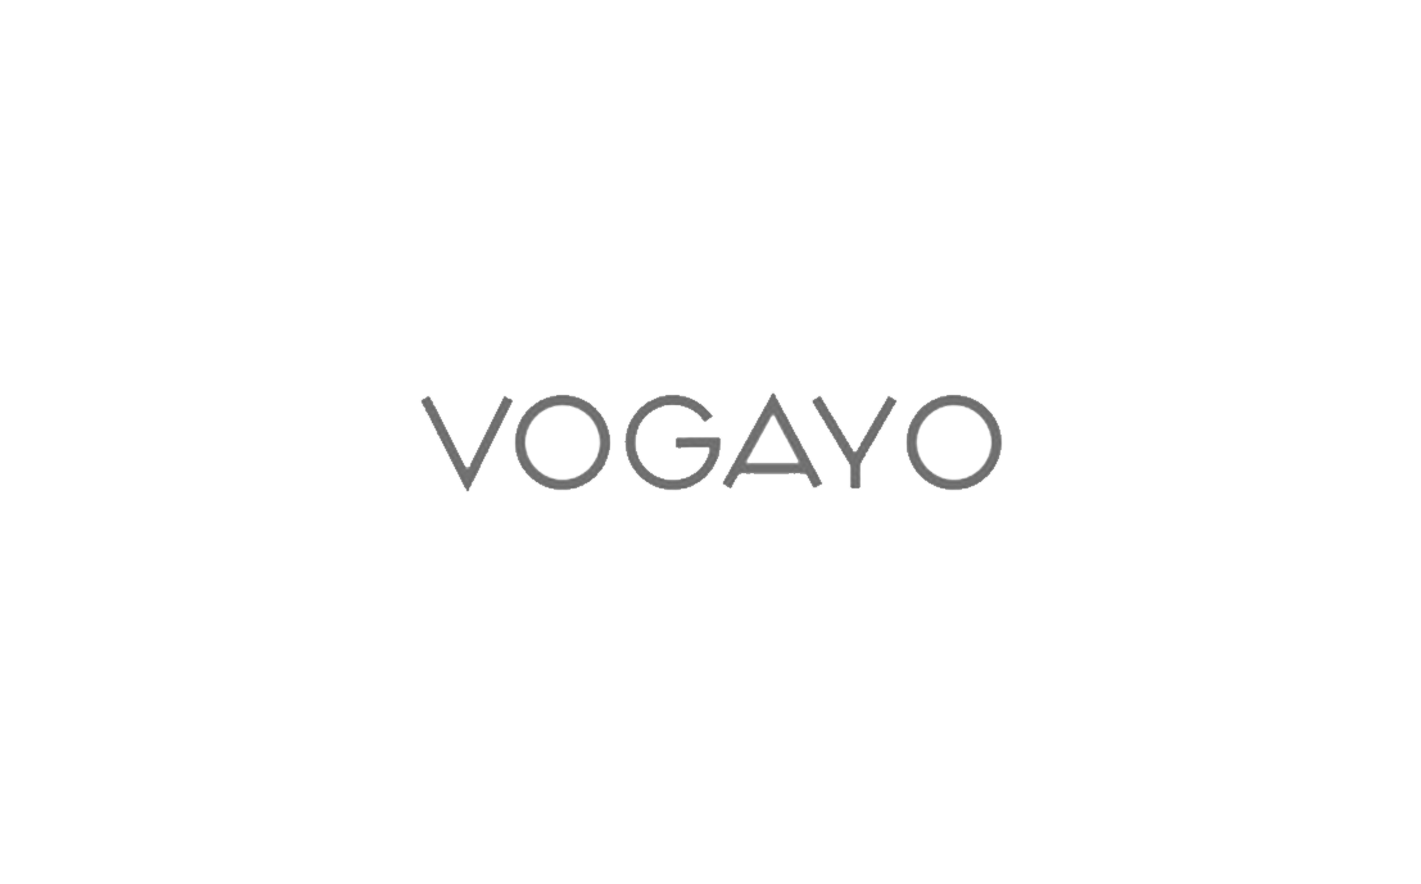 The logo for Vogayo